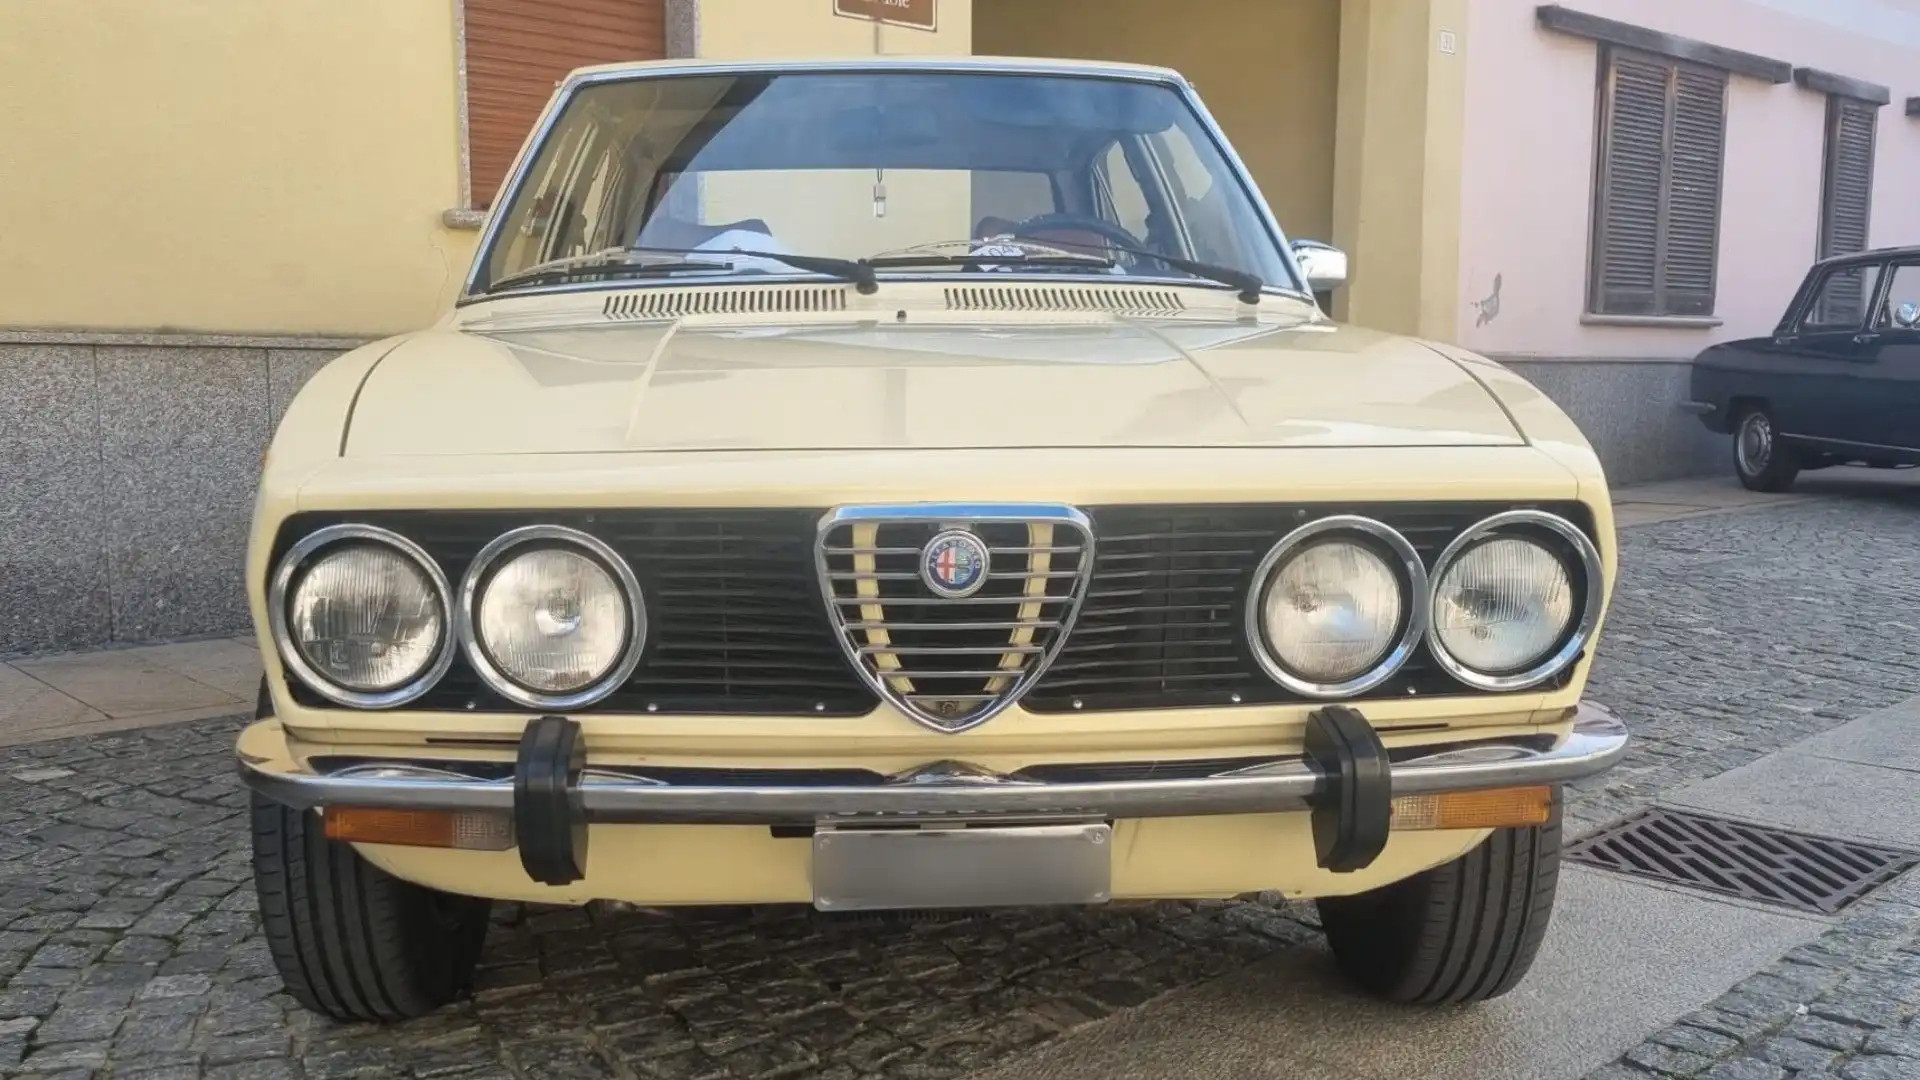 Le foto della mitica Alfetta, capolavoro dell'Alfa Romeo